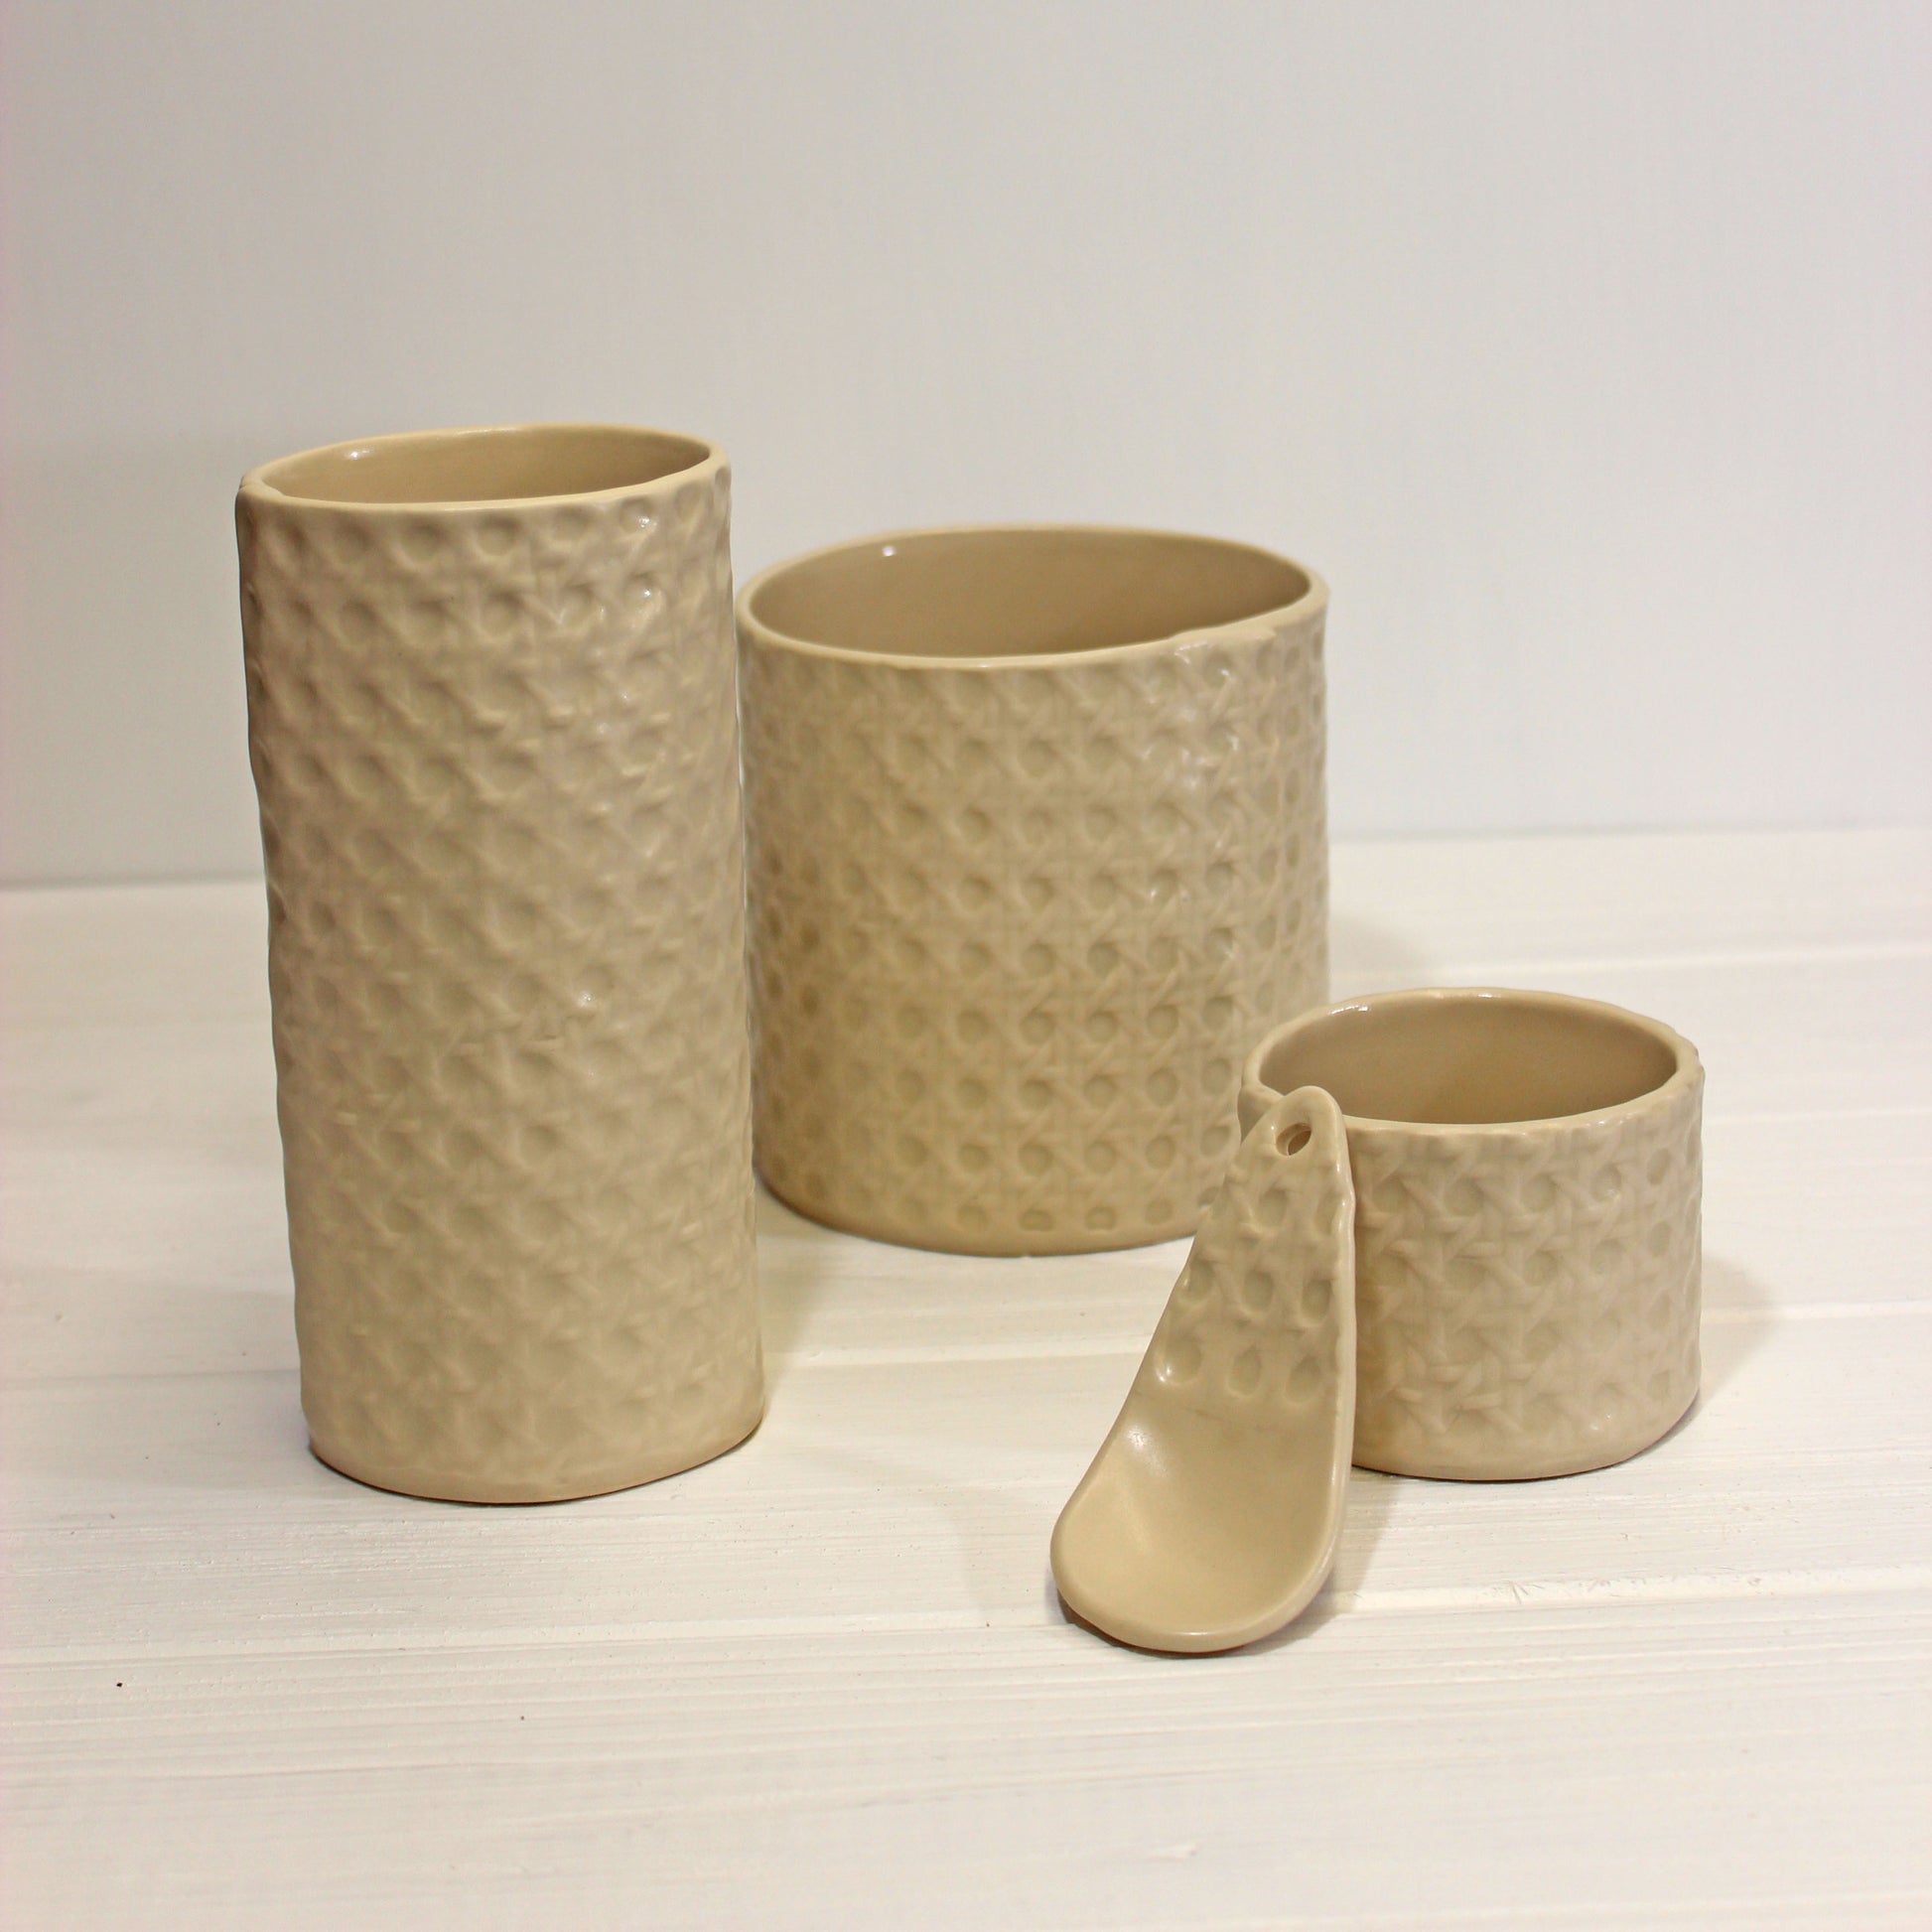 handmade in maine cane texture ceramic vases